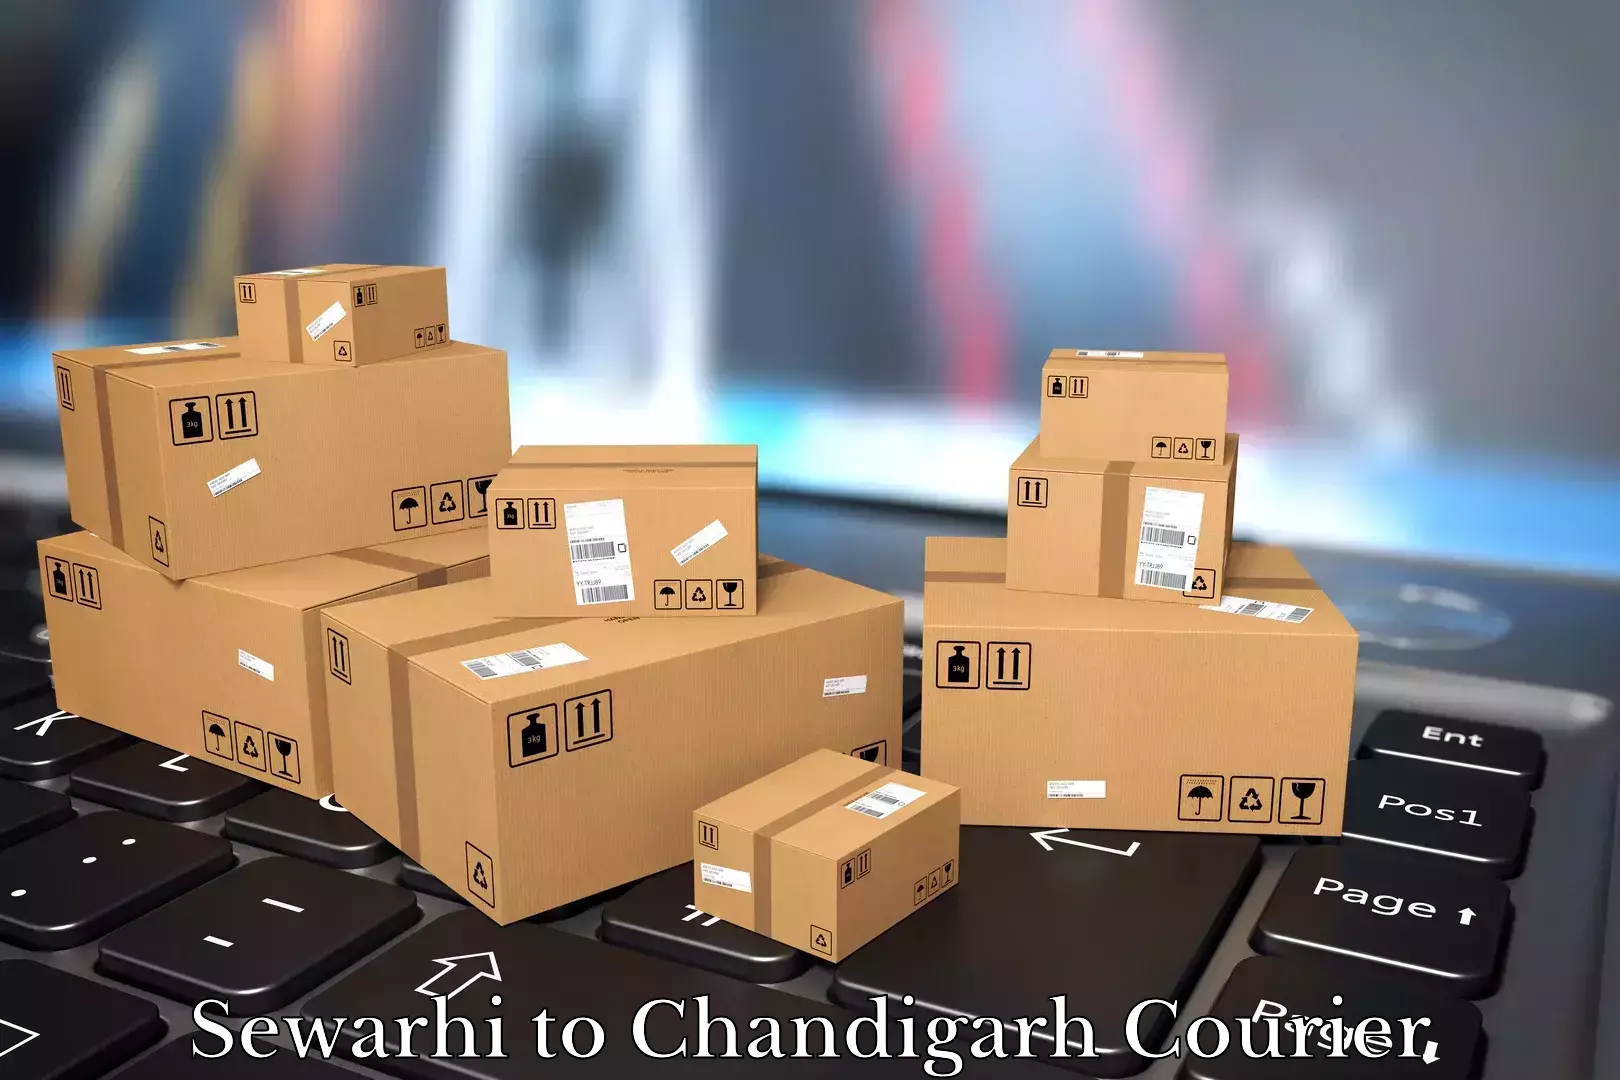 Professional moving assistance Sewarhi to Chandigarh